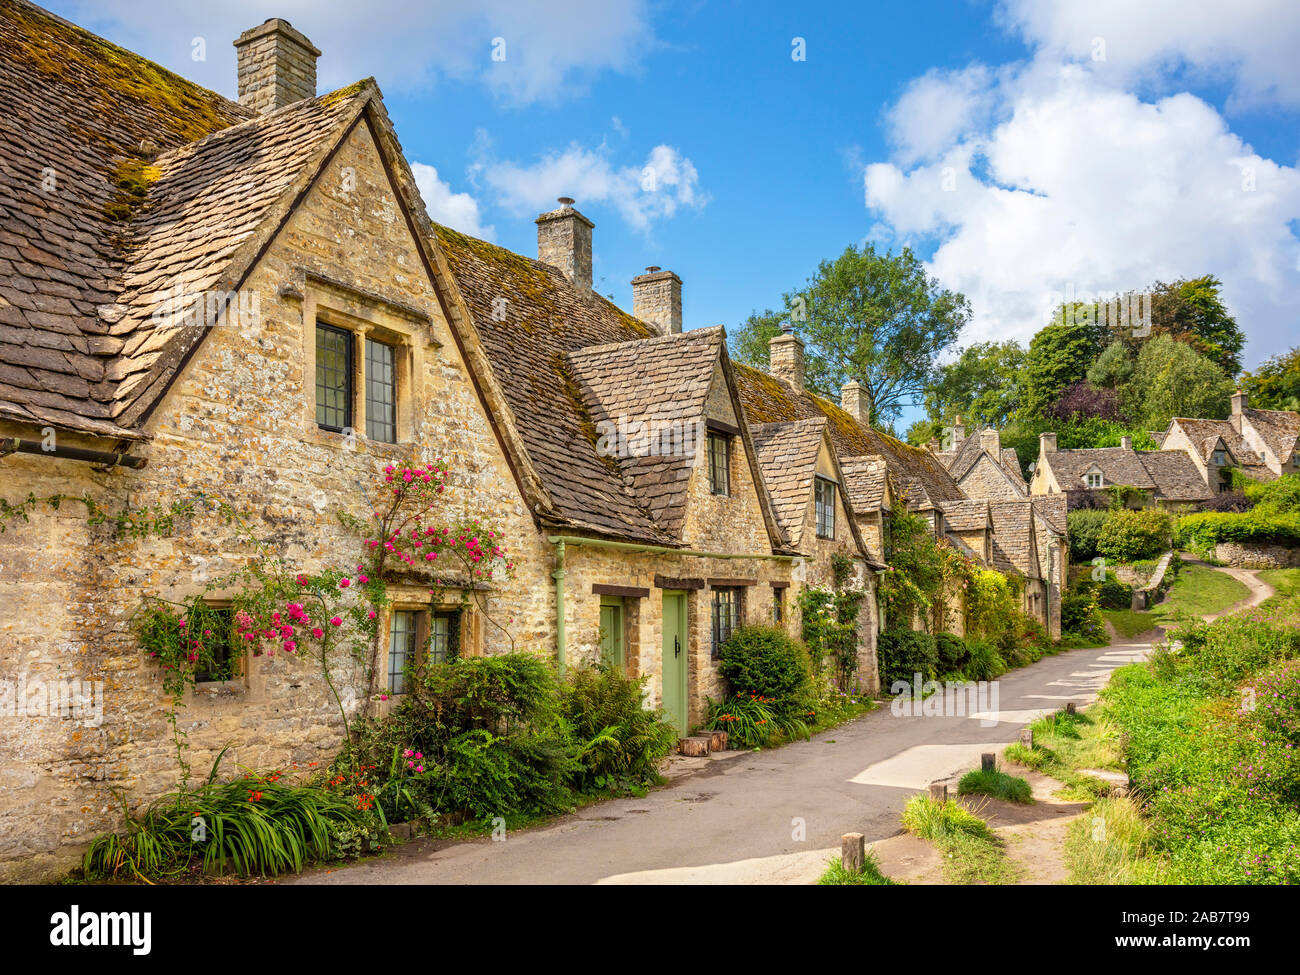 Bibury Weavers Cottages, Arlington Row, Bibury, les Cotswolds, Wiltshire, Angleterre, Royaume-Uni, Europe Banque D'Images